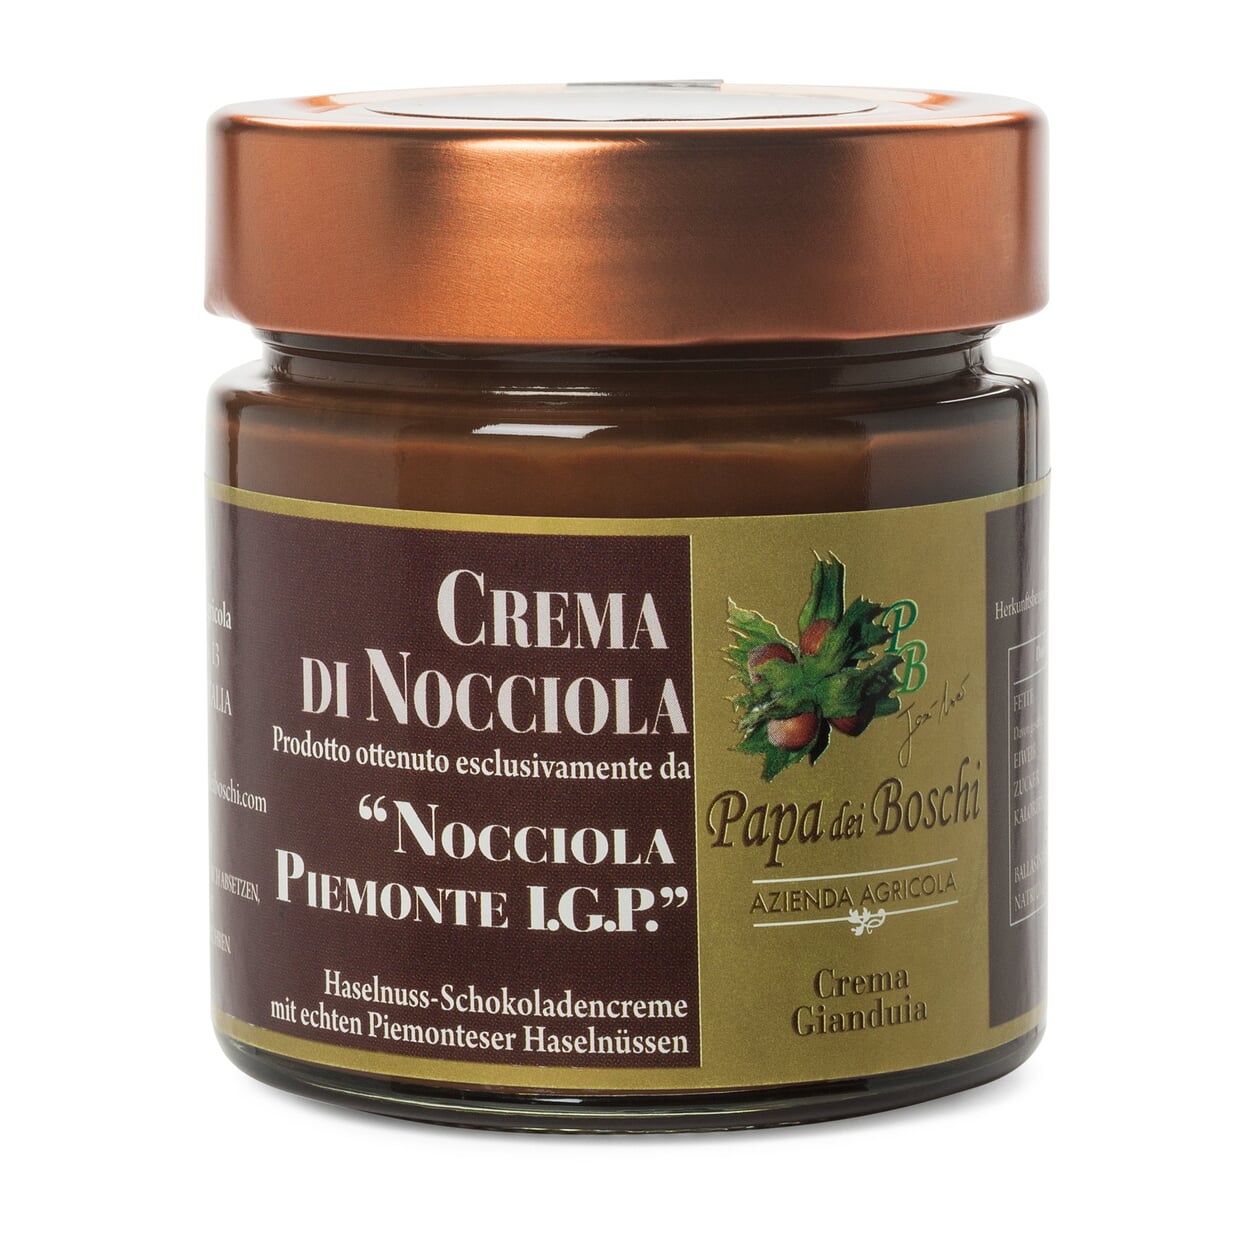 Piemontesische Haselnuss-Schokoladen-Creme | Manufactum